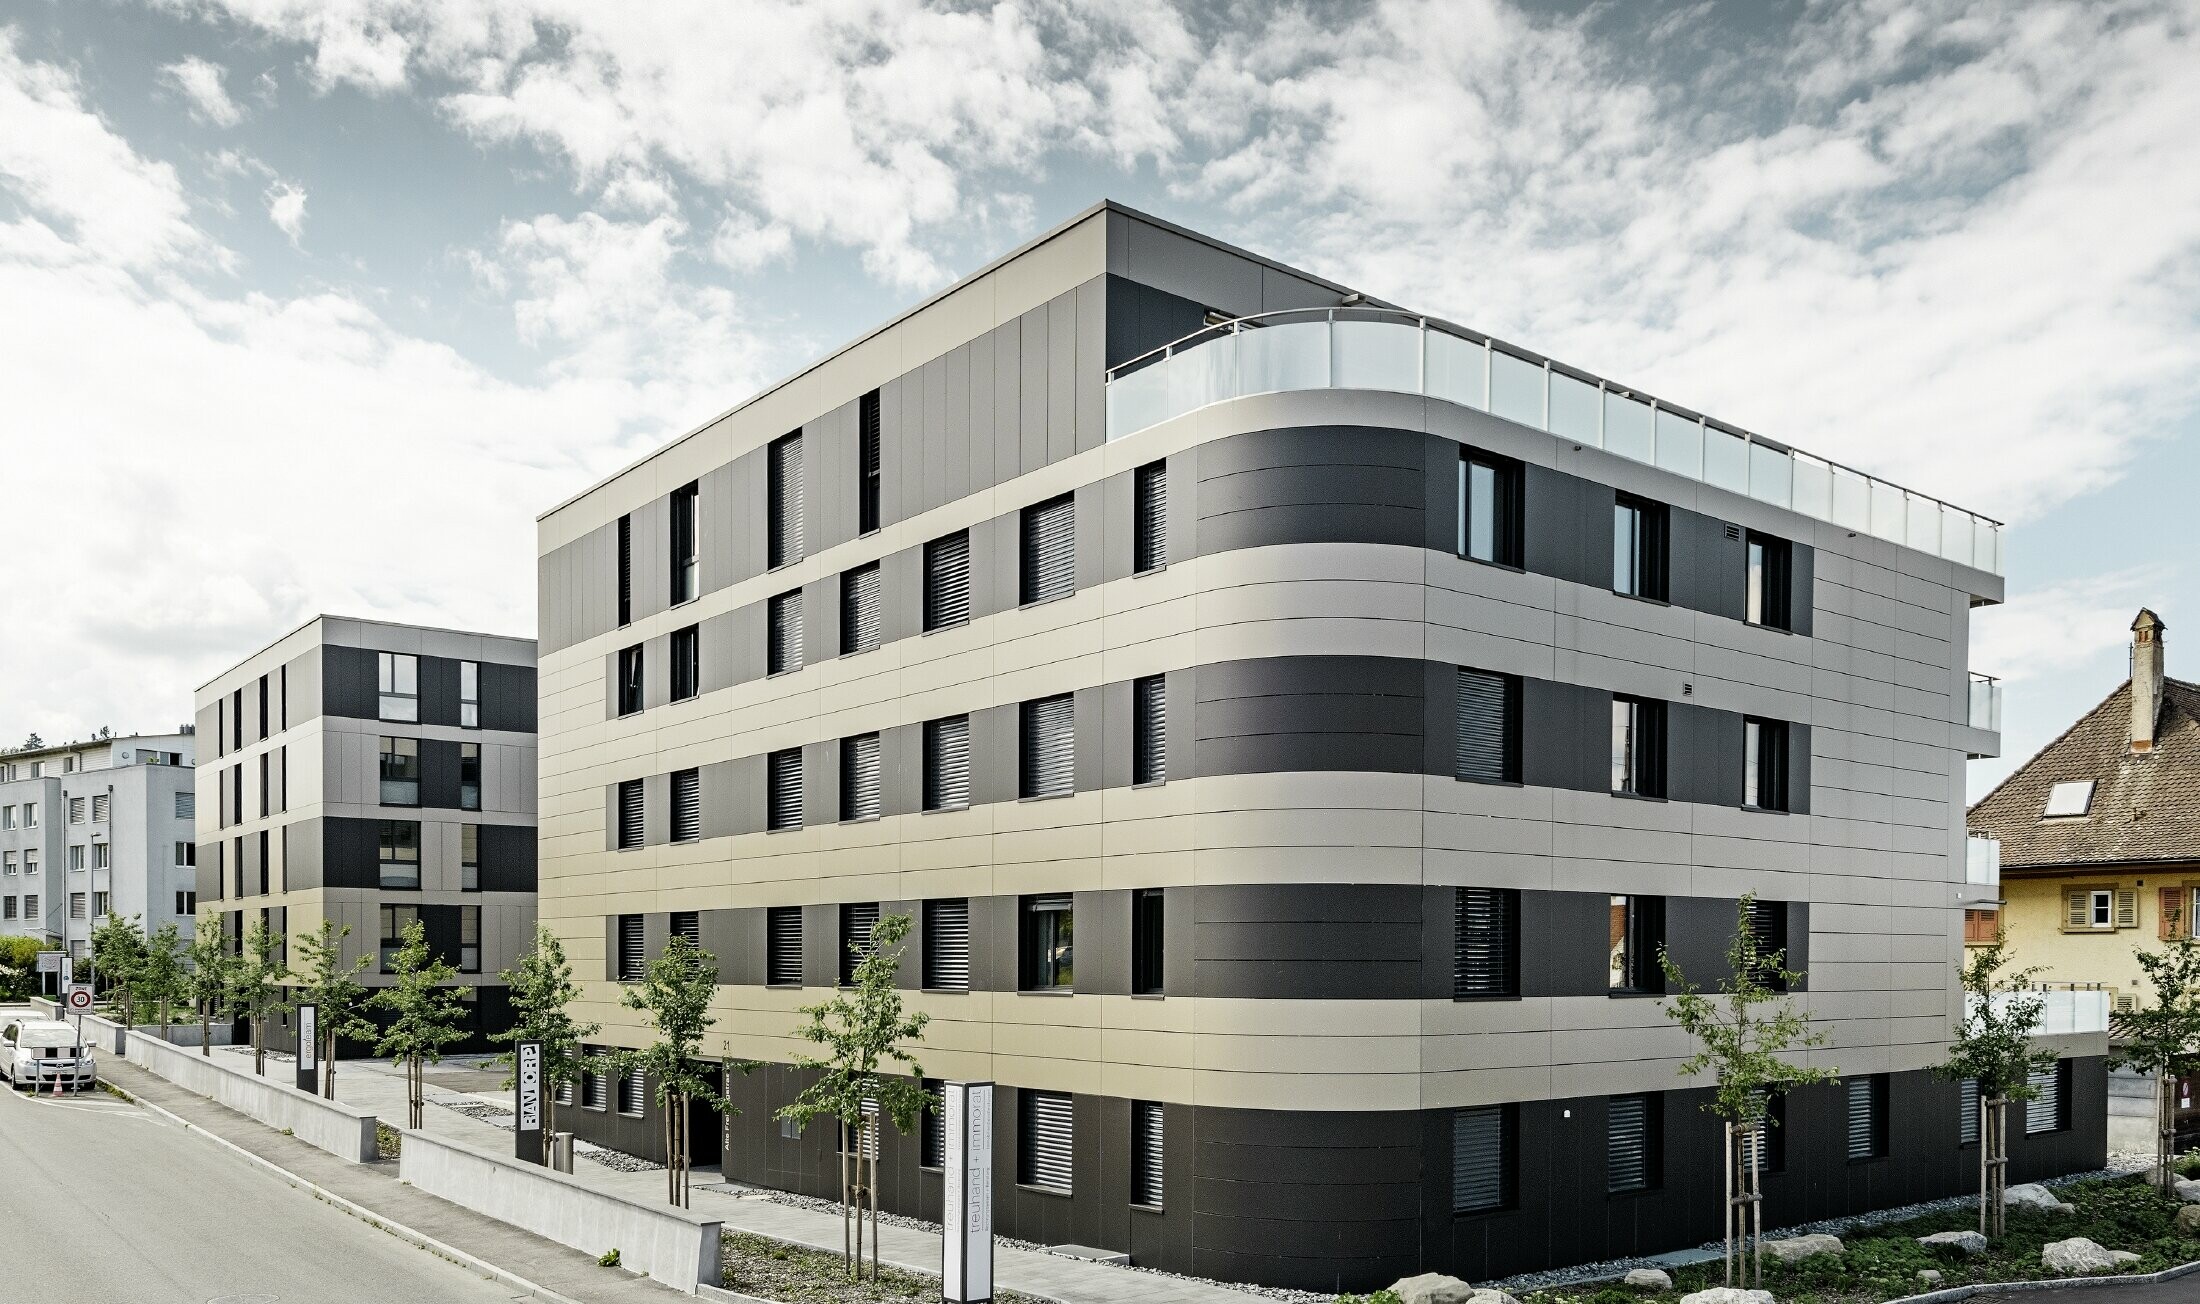 Complexe résidentiel aux immeubles cubiques — Façades en aluminium PREFA de couleur bronze avec des éléments gris noir